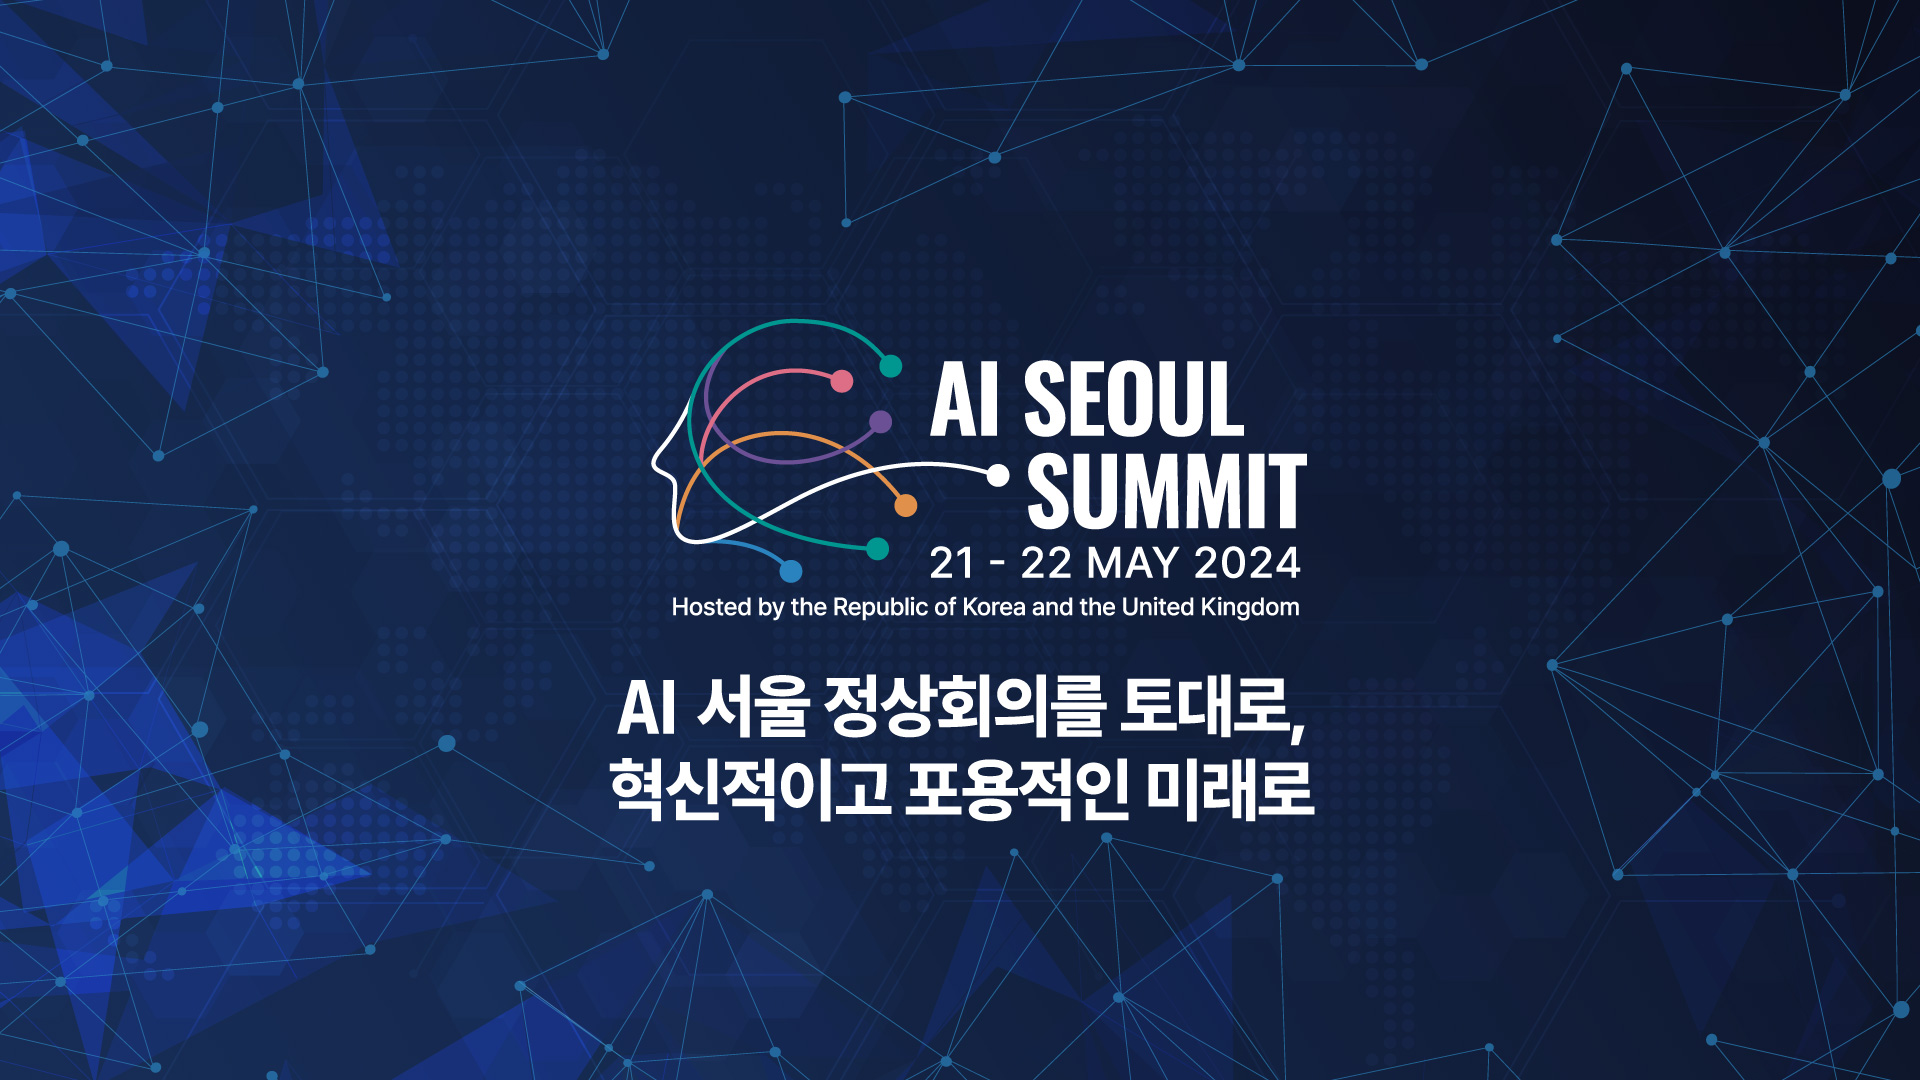 &lt;행사 개요&gt;1. 행사명: AI 서울 정상회의2. 일정: 2024. 5. 1.(화) ~ 5. 22.(수)3. 주최: 대한민국 정부, 영국정부4. 주제: AI 서울 정상회의를 토대로, 혁신적이고 포용적인 미래로